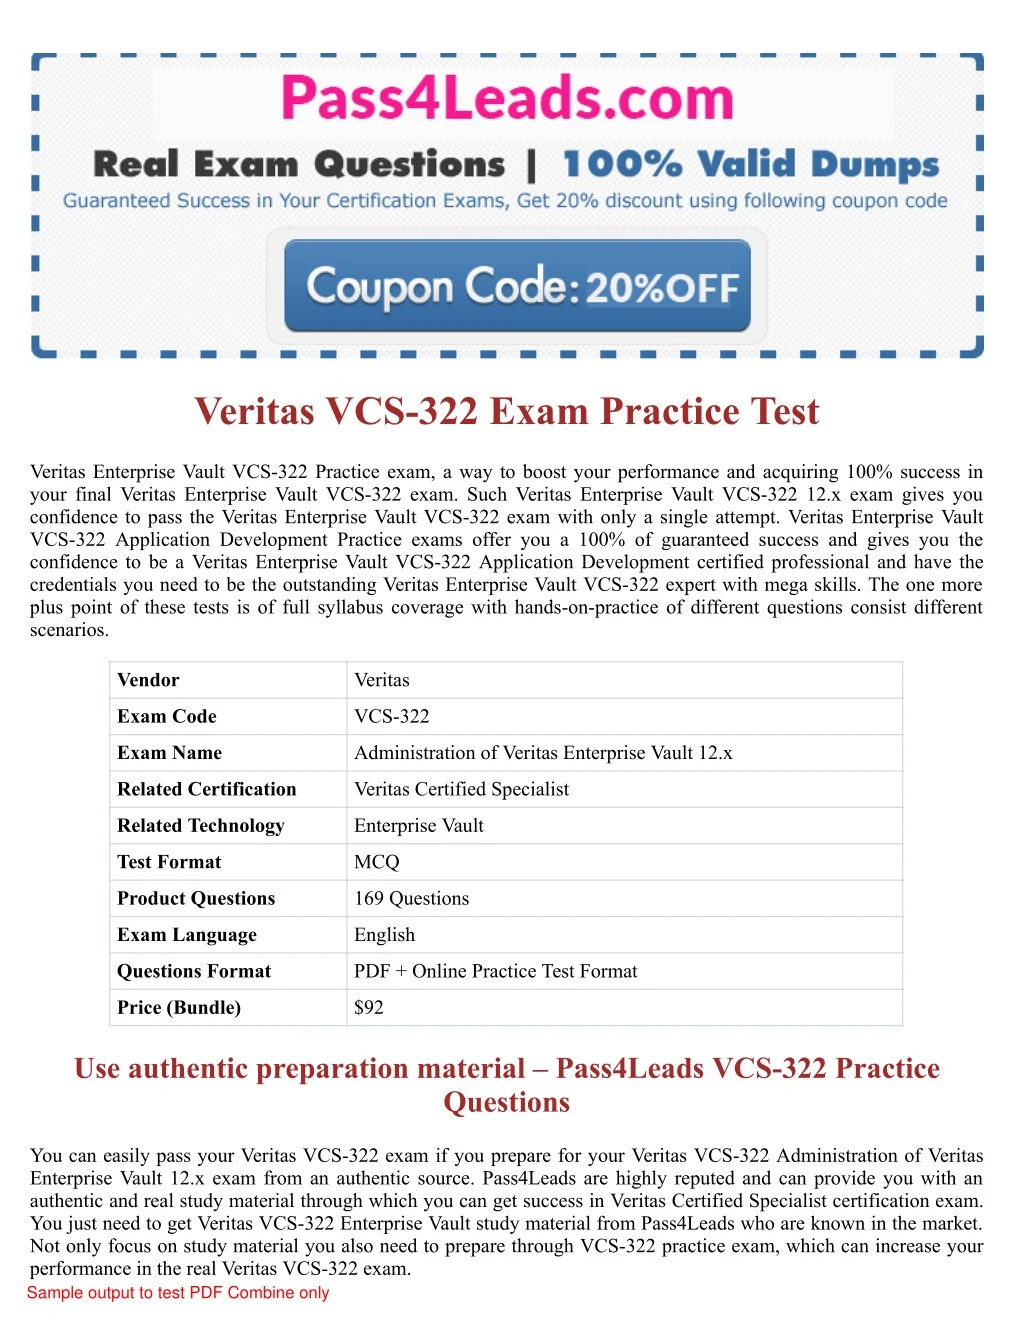 veritas vcs 322 exam practice test